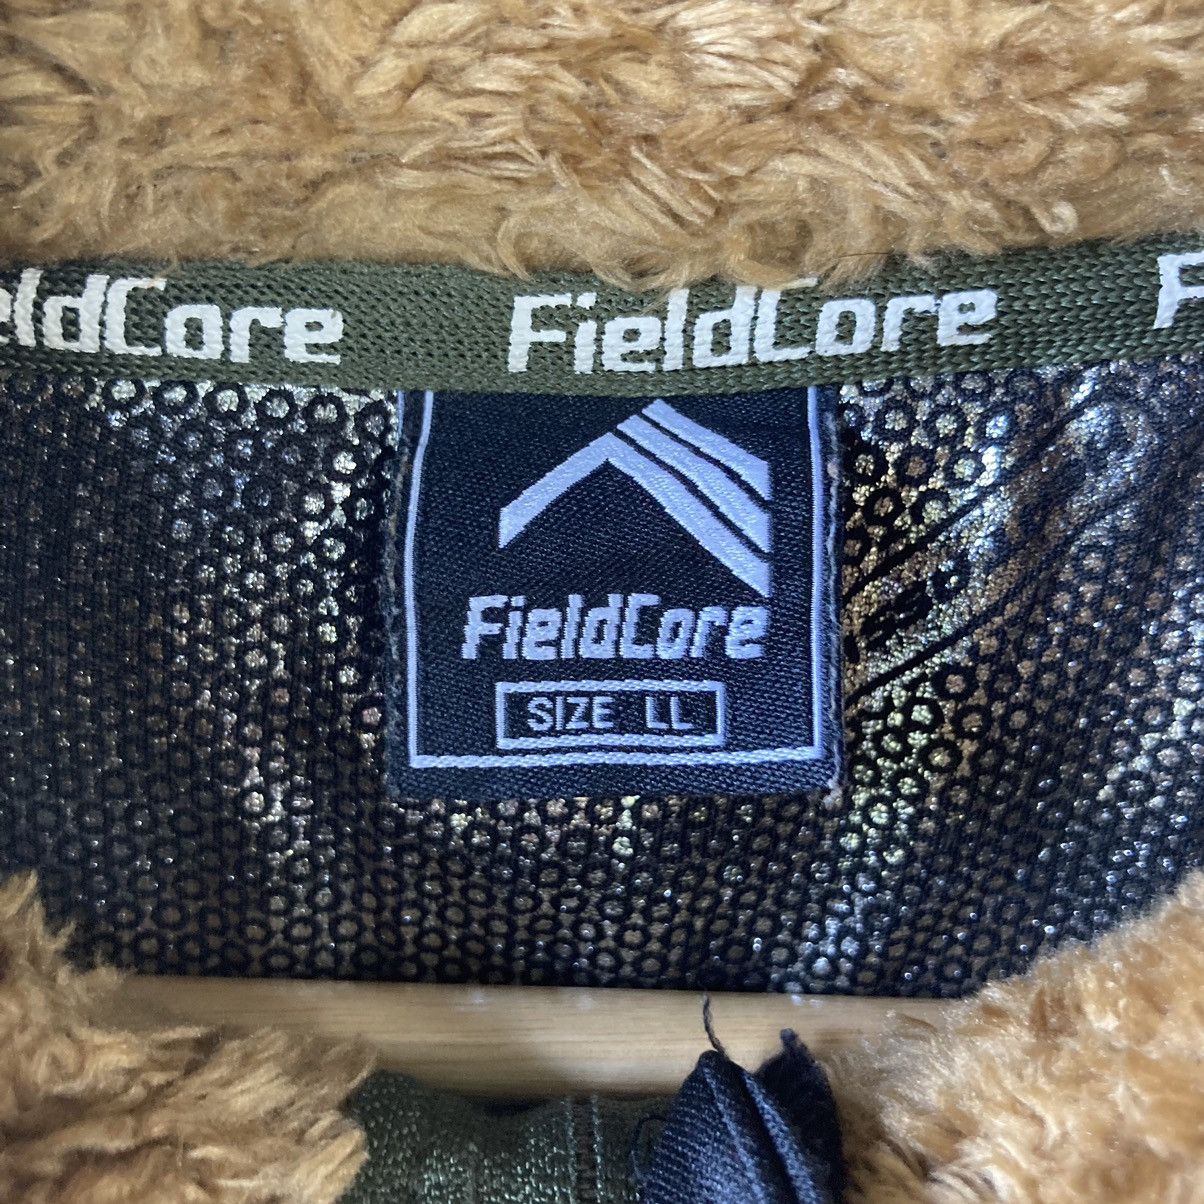 Vintage Fieldcore Fleece Full Zip Sweater - 5